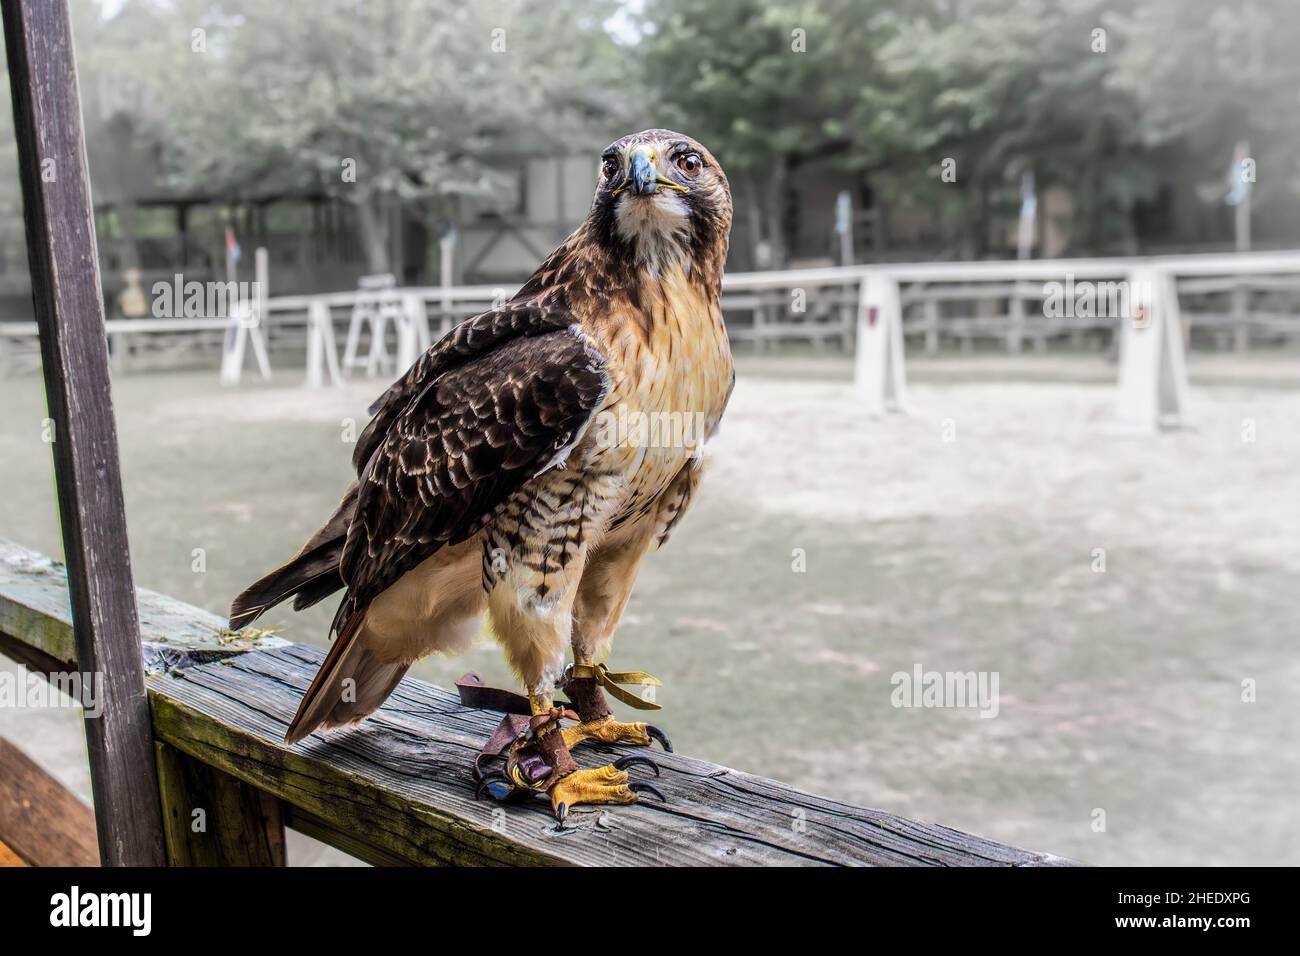 Greifvögel oder Greifvögel - der in Falconry trainierte Hawk sieht aus, wie ein rustikaler Holzzaun mit Streifen aus kräftigem Leder, genannt „Jesses“, an beiden Beinen, wachsam aussieht. Stockfoto